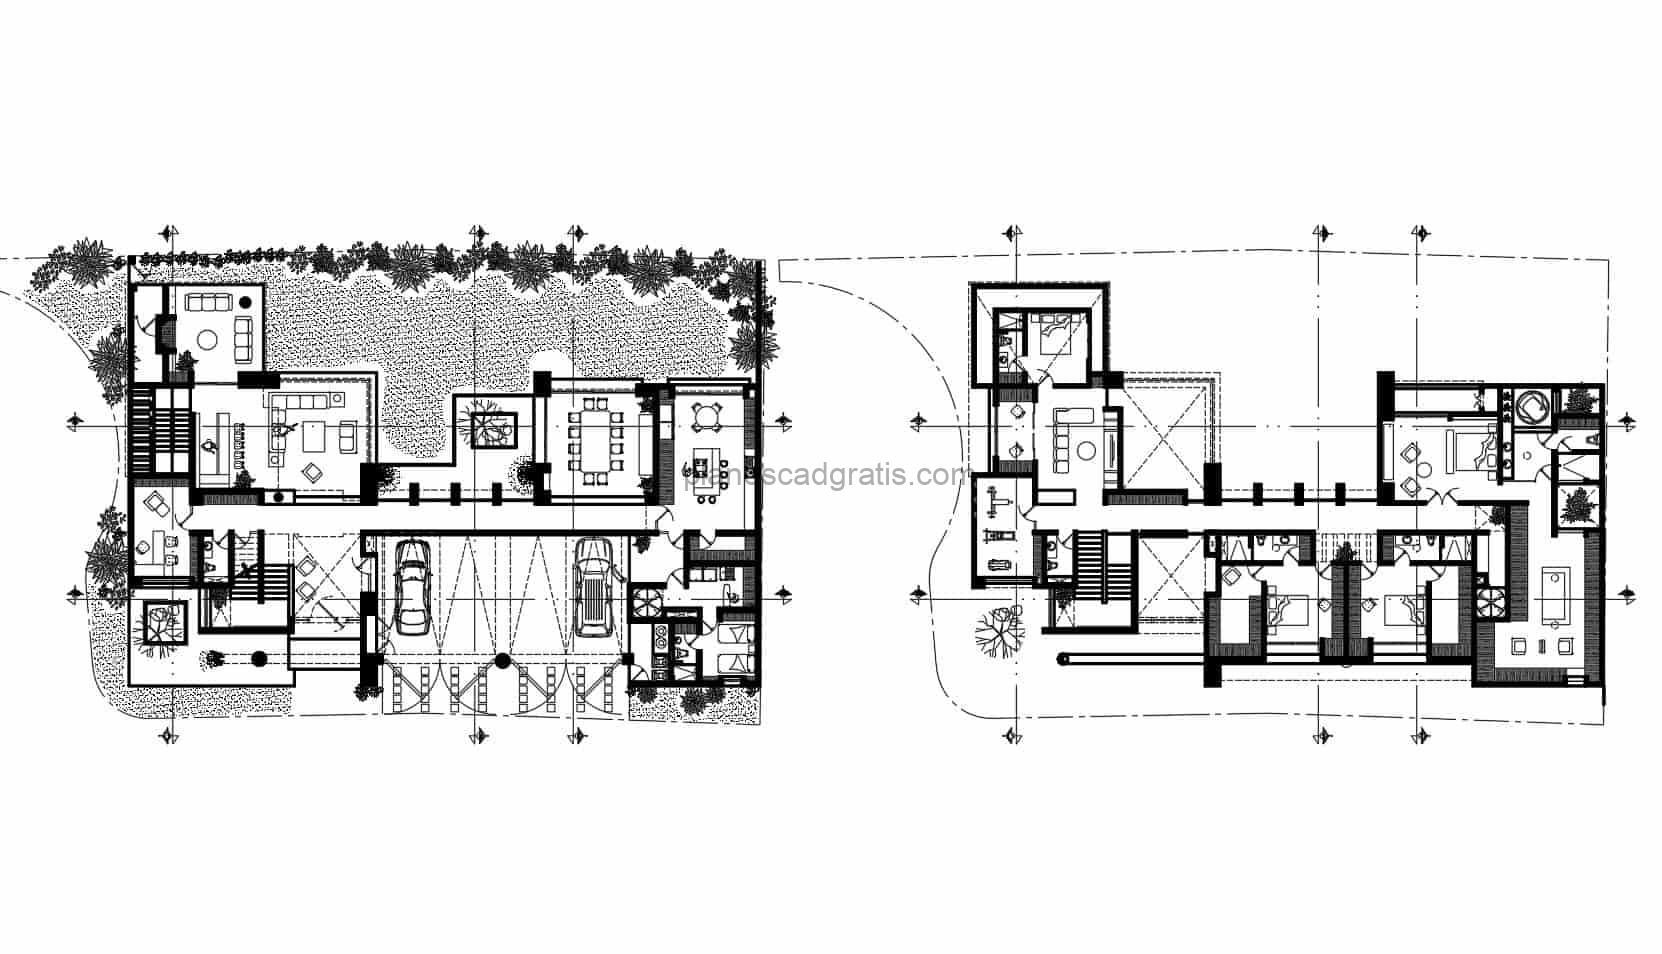 planos de autocad completos formato dwg 2D de residencia con estilo moderno y seis habitaciones, con gran patio, planos arquitectonicos con dimensiones, fachadas, y bloques de autocad en interior para descarga gratis